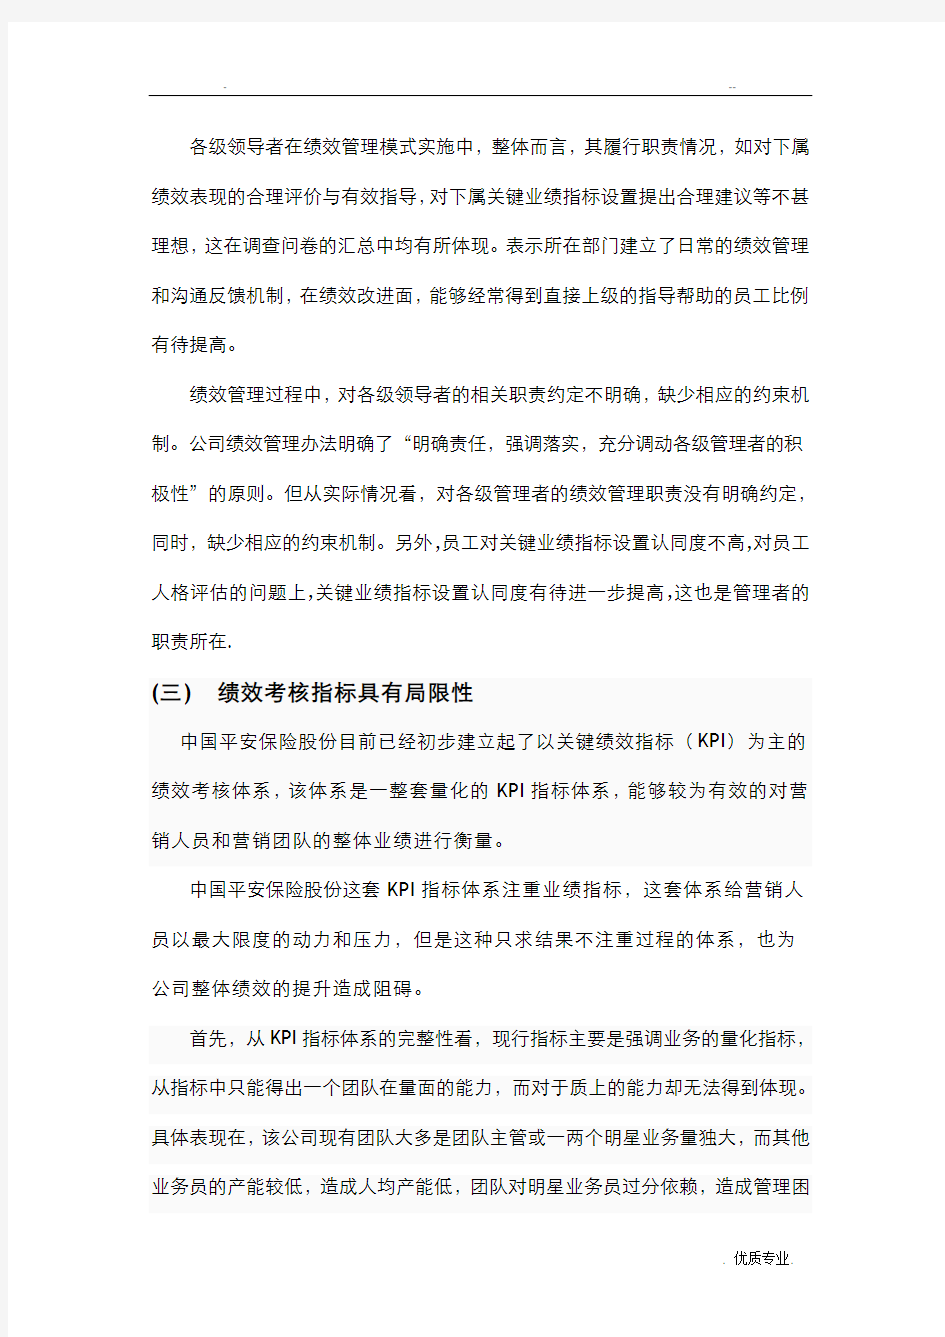 中国平安保险股份有限公司绩效管理存在的问题及对策的研究